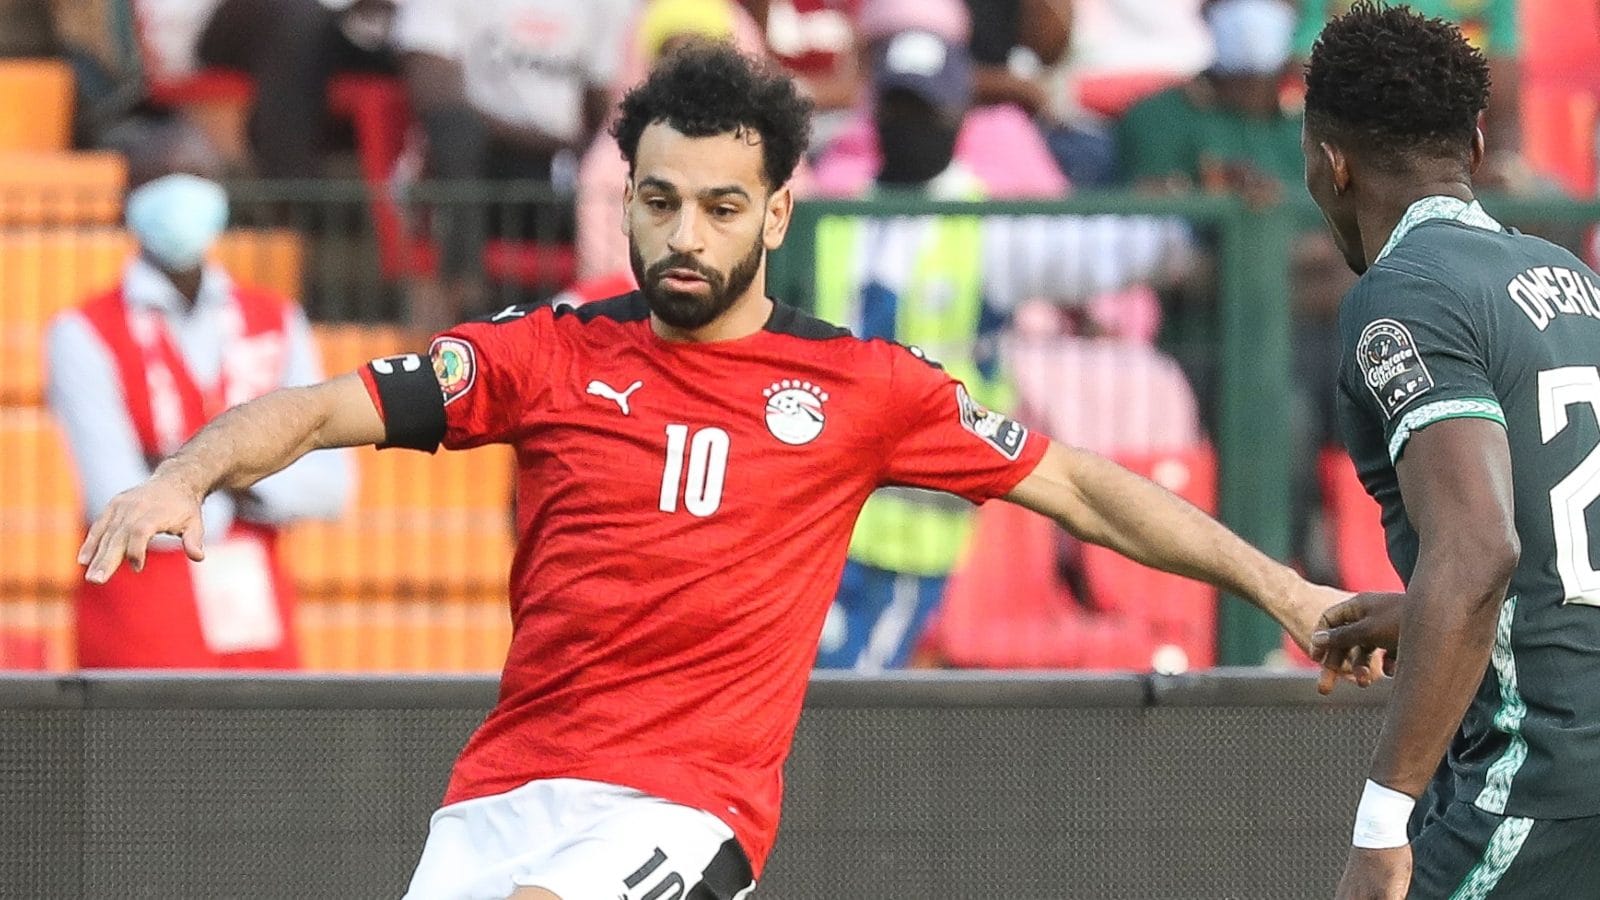 Xem hình ảnh của Salah tại World Cup sẽ khiến bạn cảm thấy vô cùng tự hào với tài năng của người Egypt. Đừng bỏ lỡ cơ hội thưởng thức những hình ảnh đầy sắc màu của Salah tại giải đấu vô địch thế giới này.